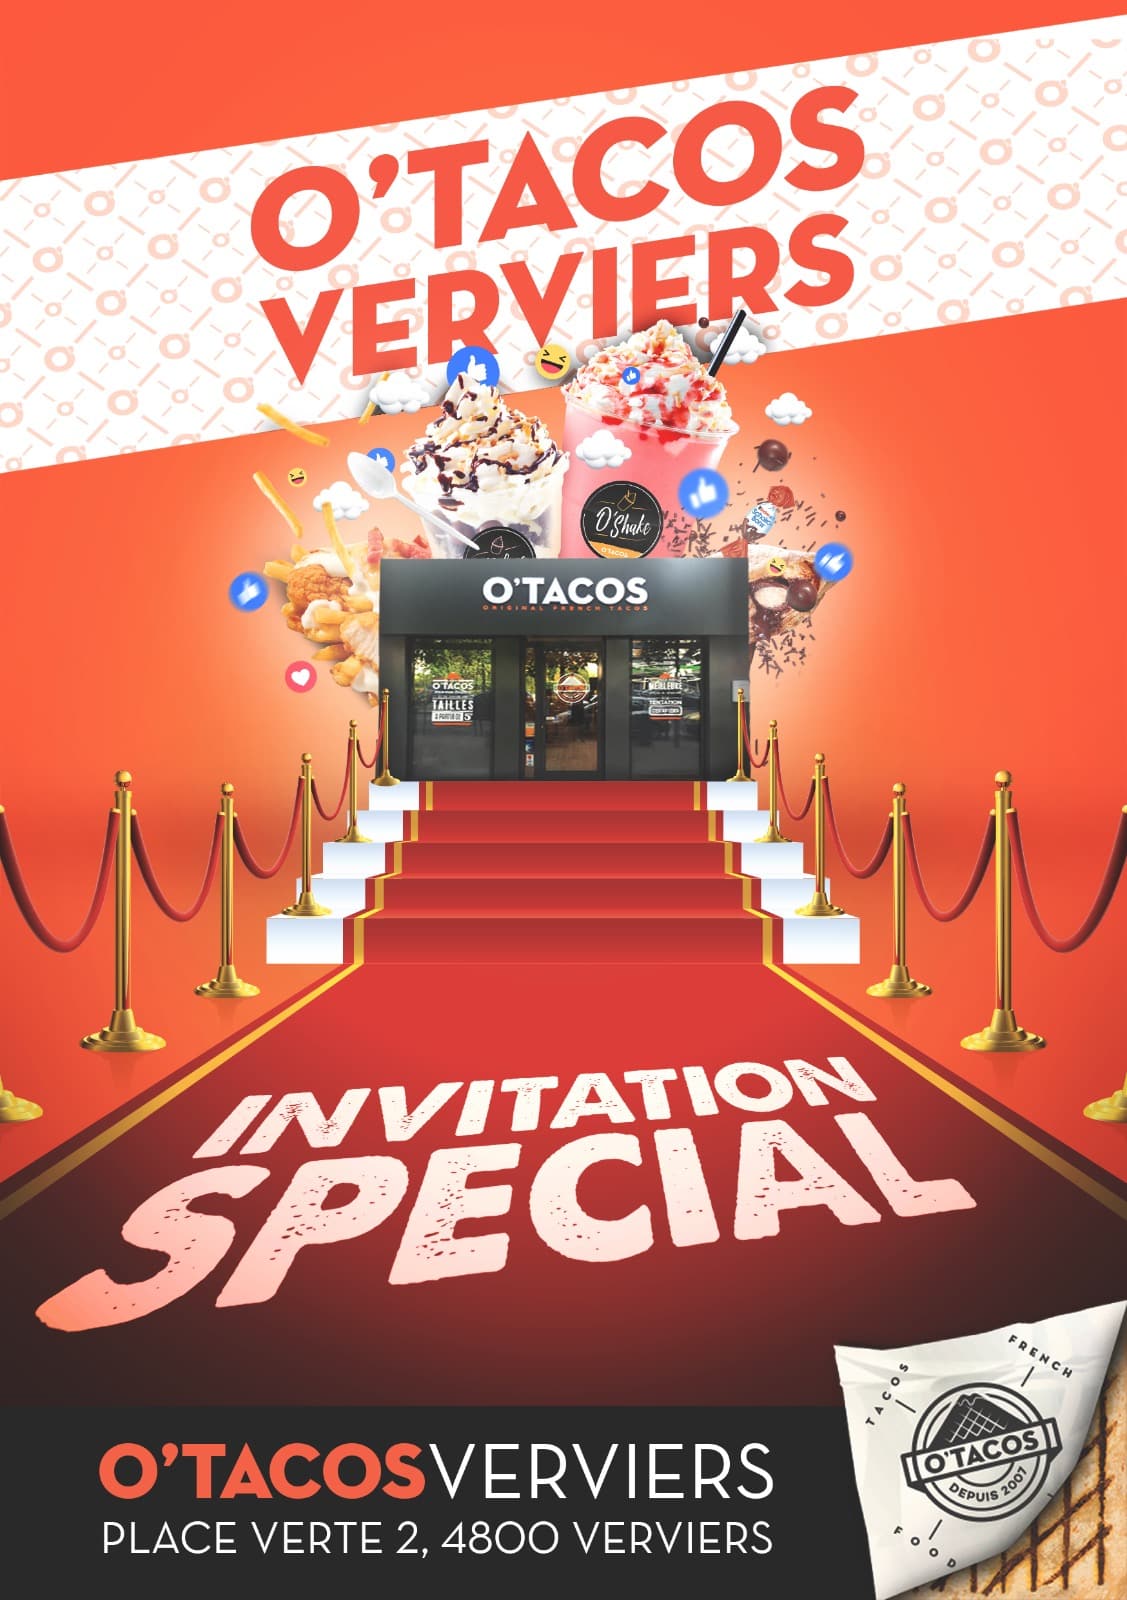 Couverture d'un flyer pour la marque O'Tacos, pour presenter un évènement.